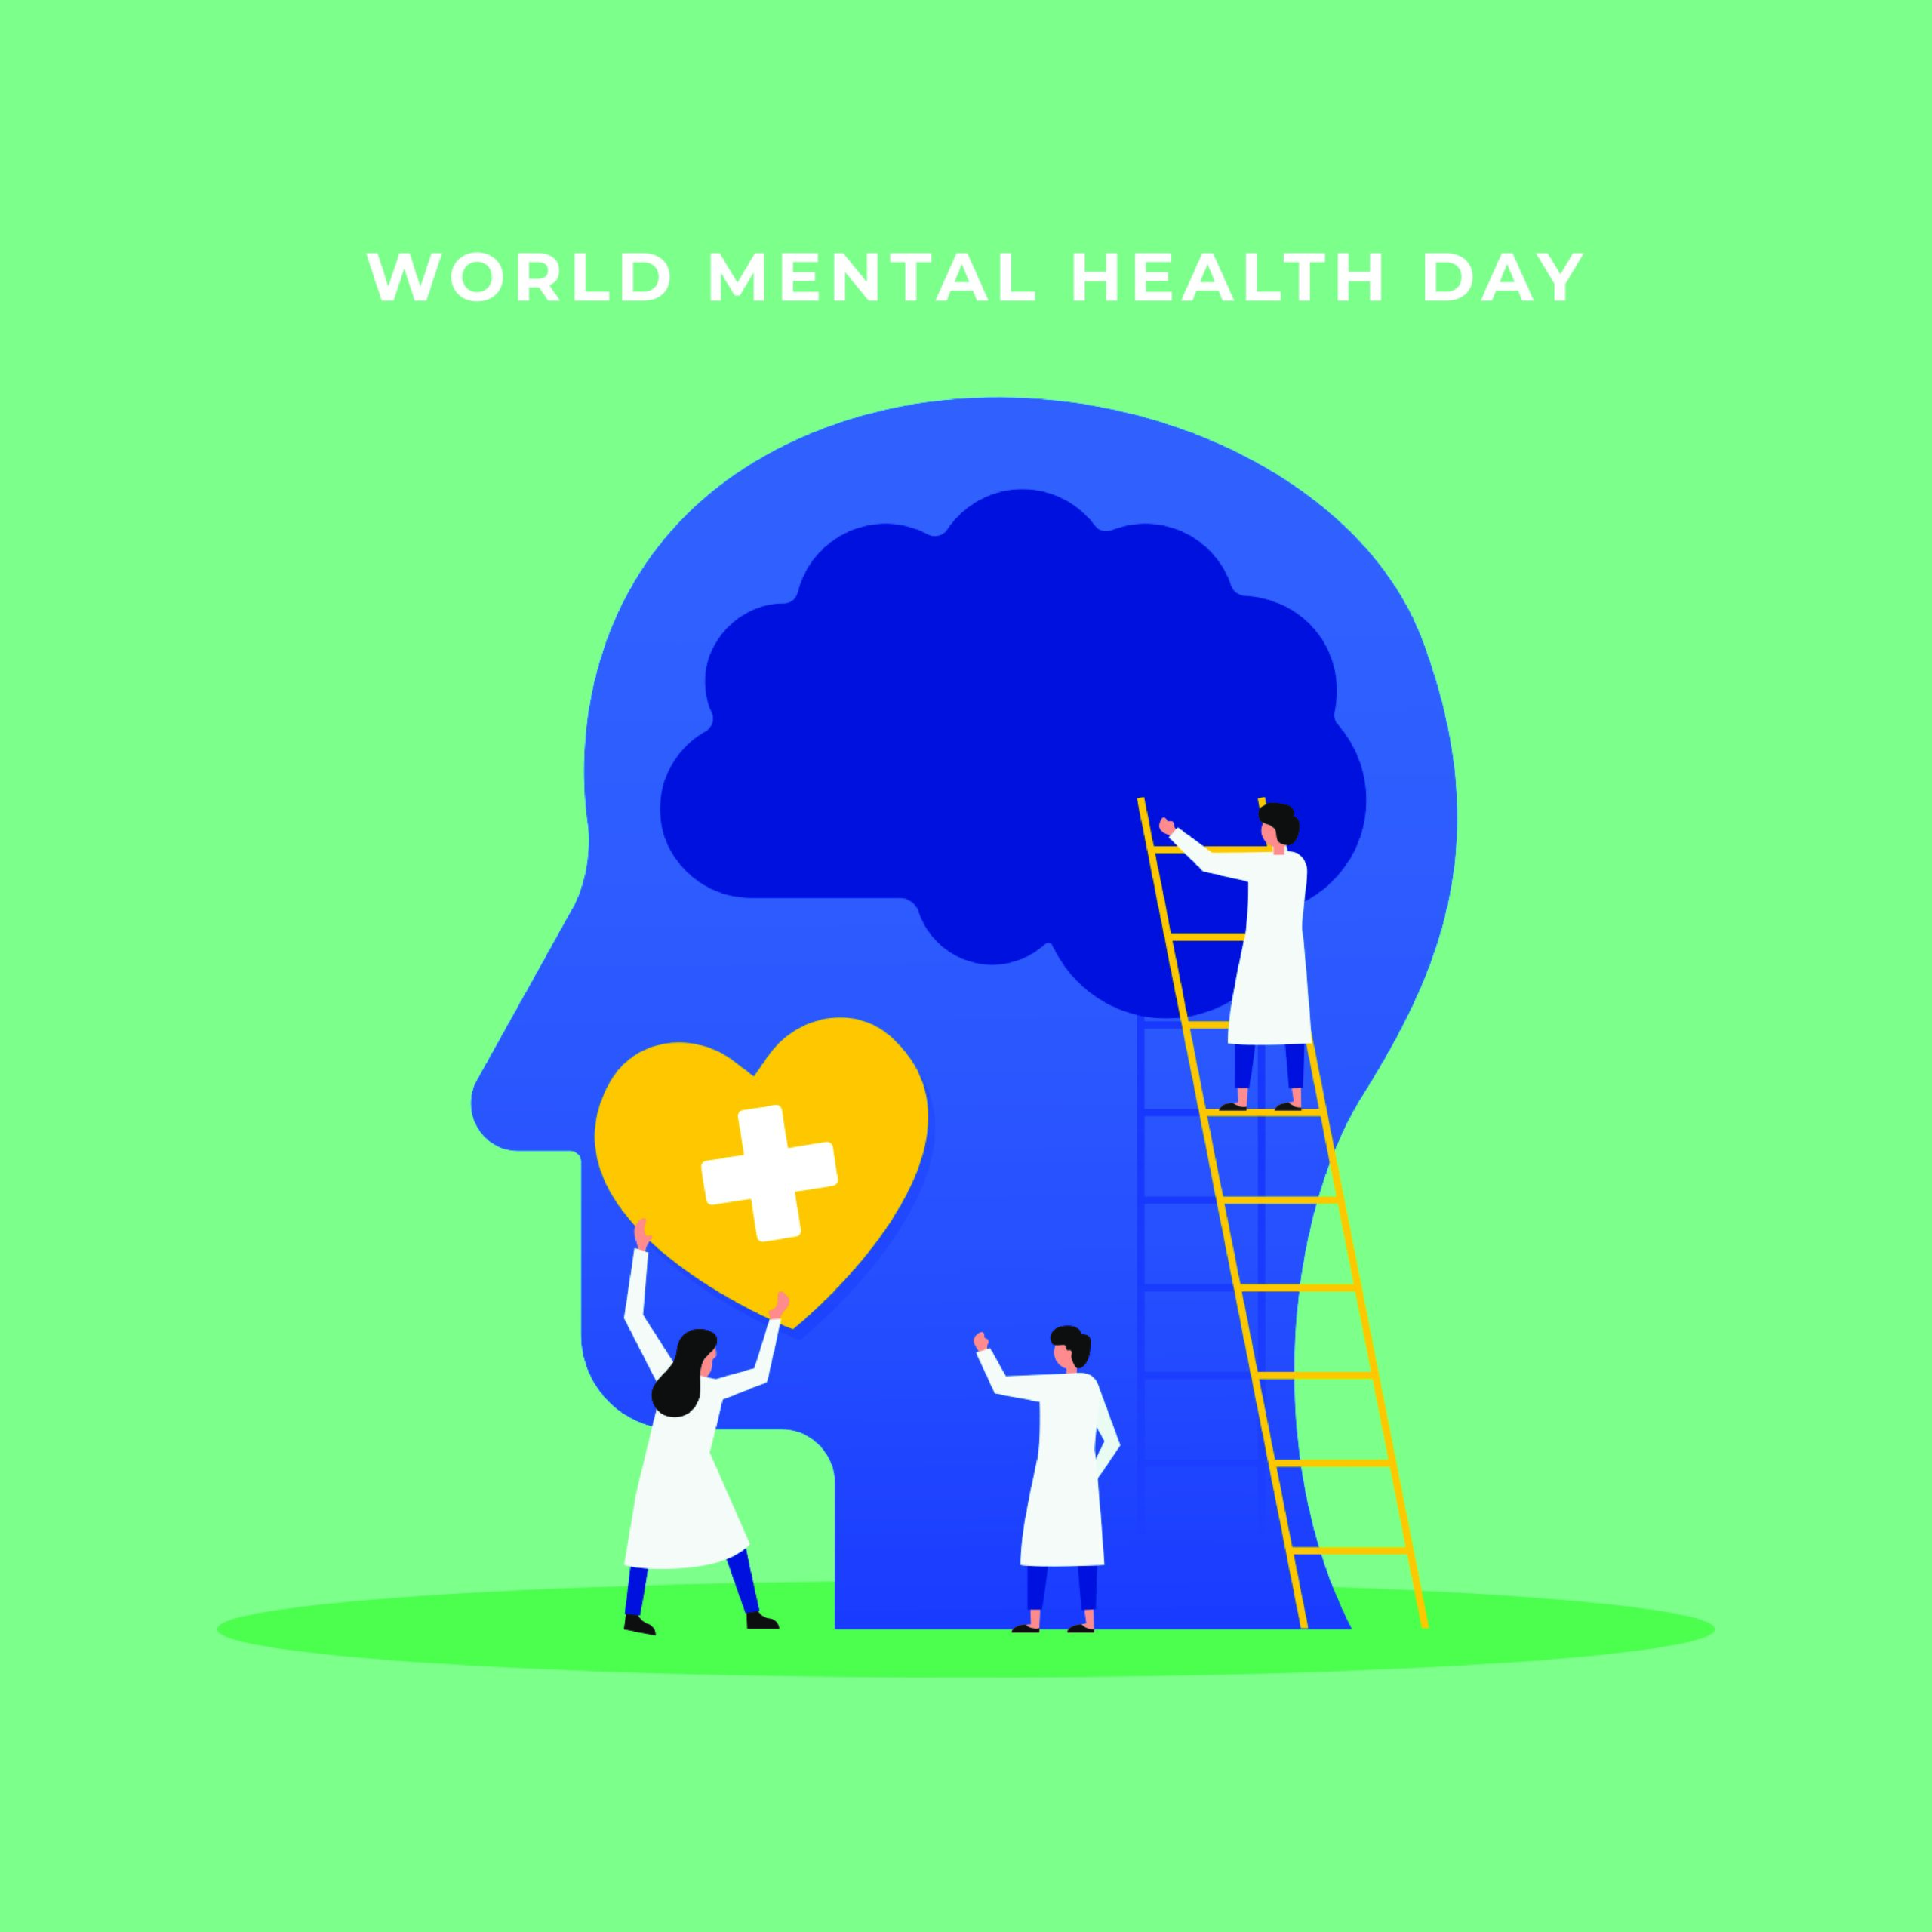 10η Οκτωβρίου, Παγκόσμια Ημέρα Ψυχικής Υγείας 2020